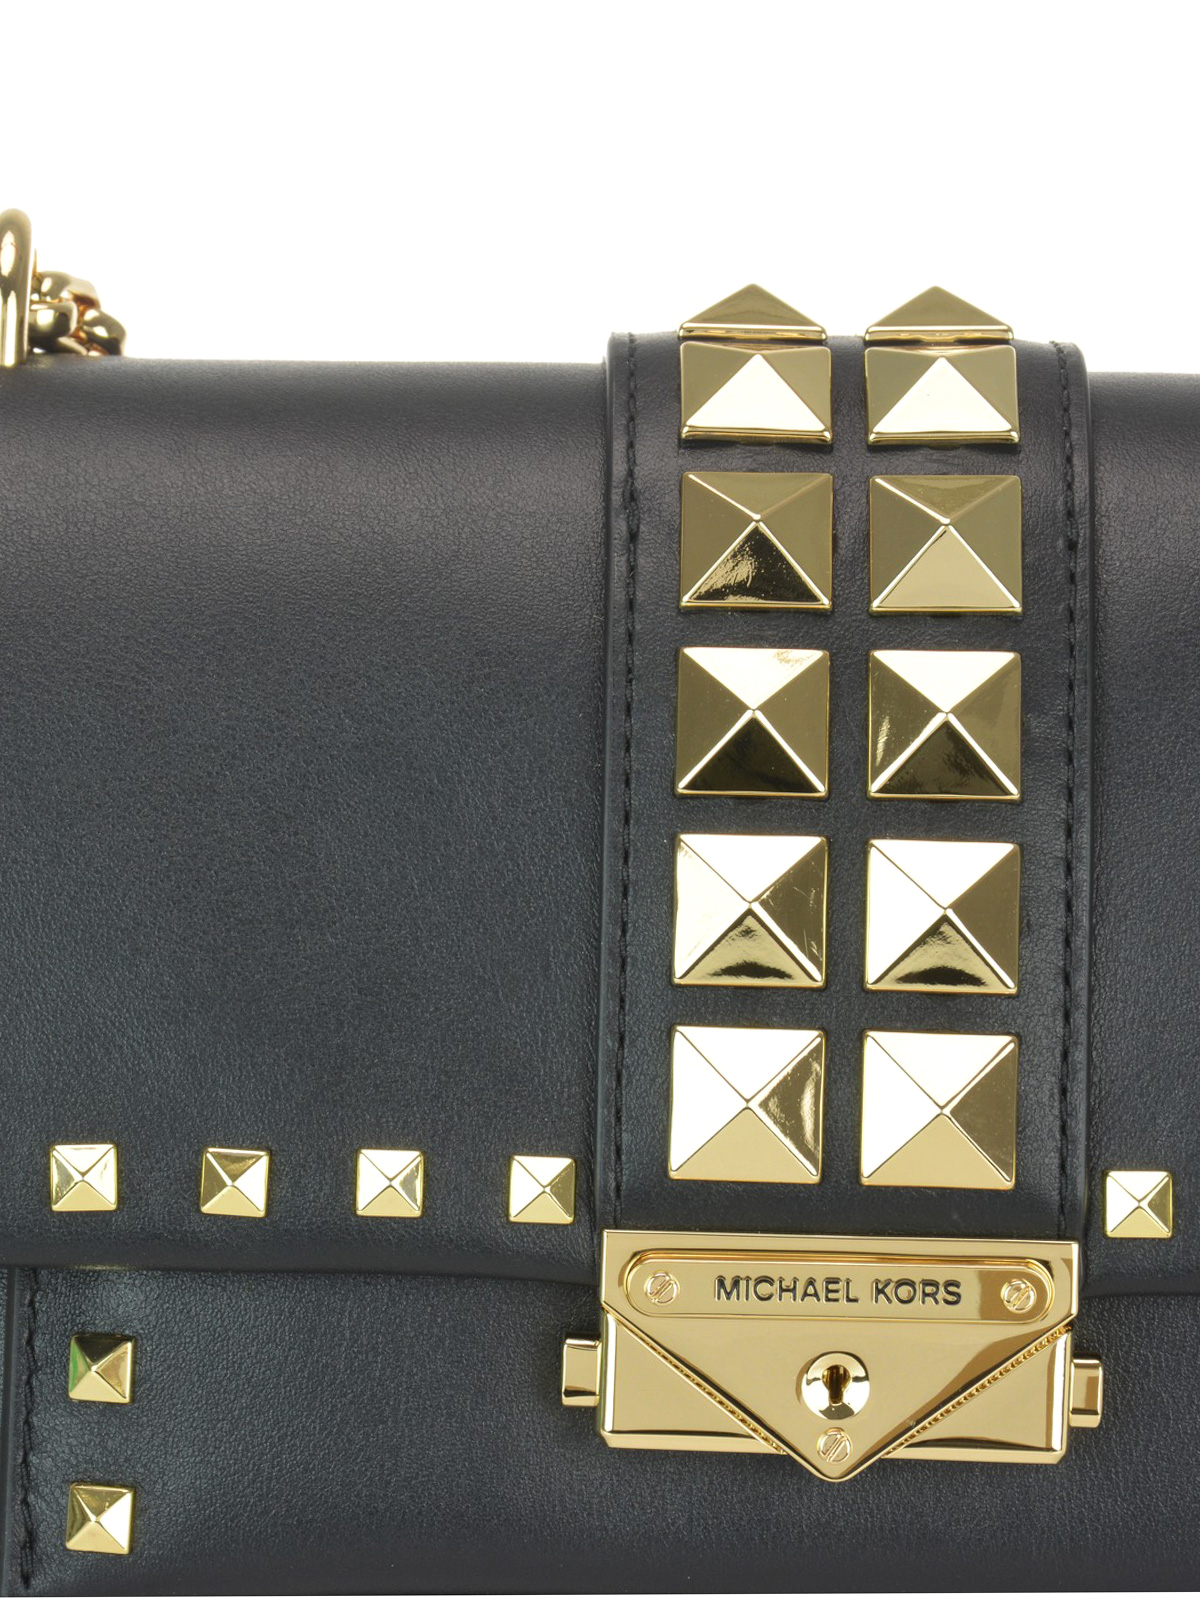 Shoulder bags Michael Kors - Cece medium studded leather bag - 30S9G0EL6L001